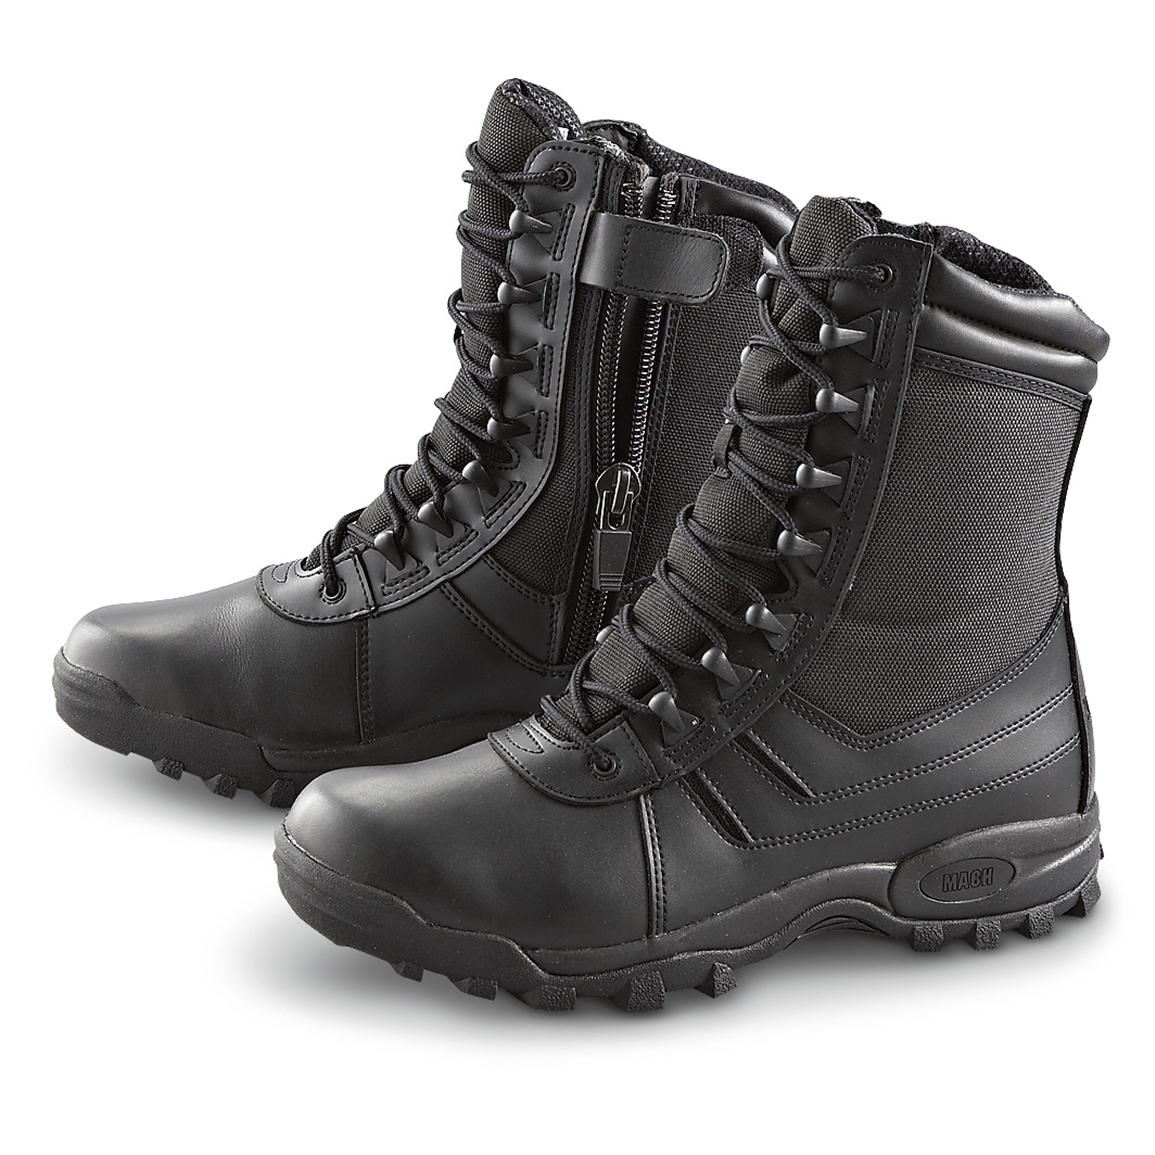 Men's Matterhorn® Tactical Boots, Black - 153670, Combat & Tactical ...